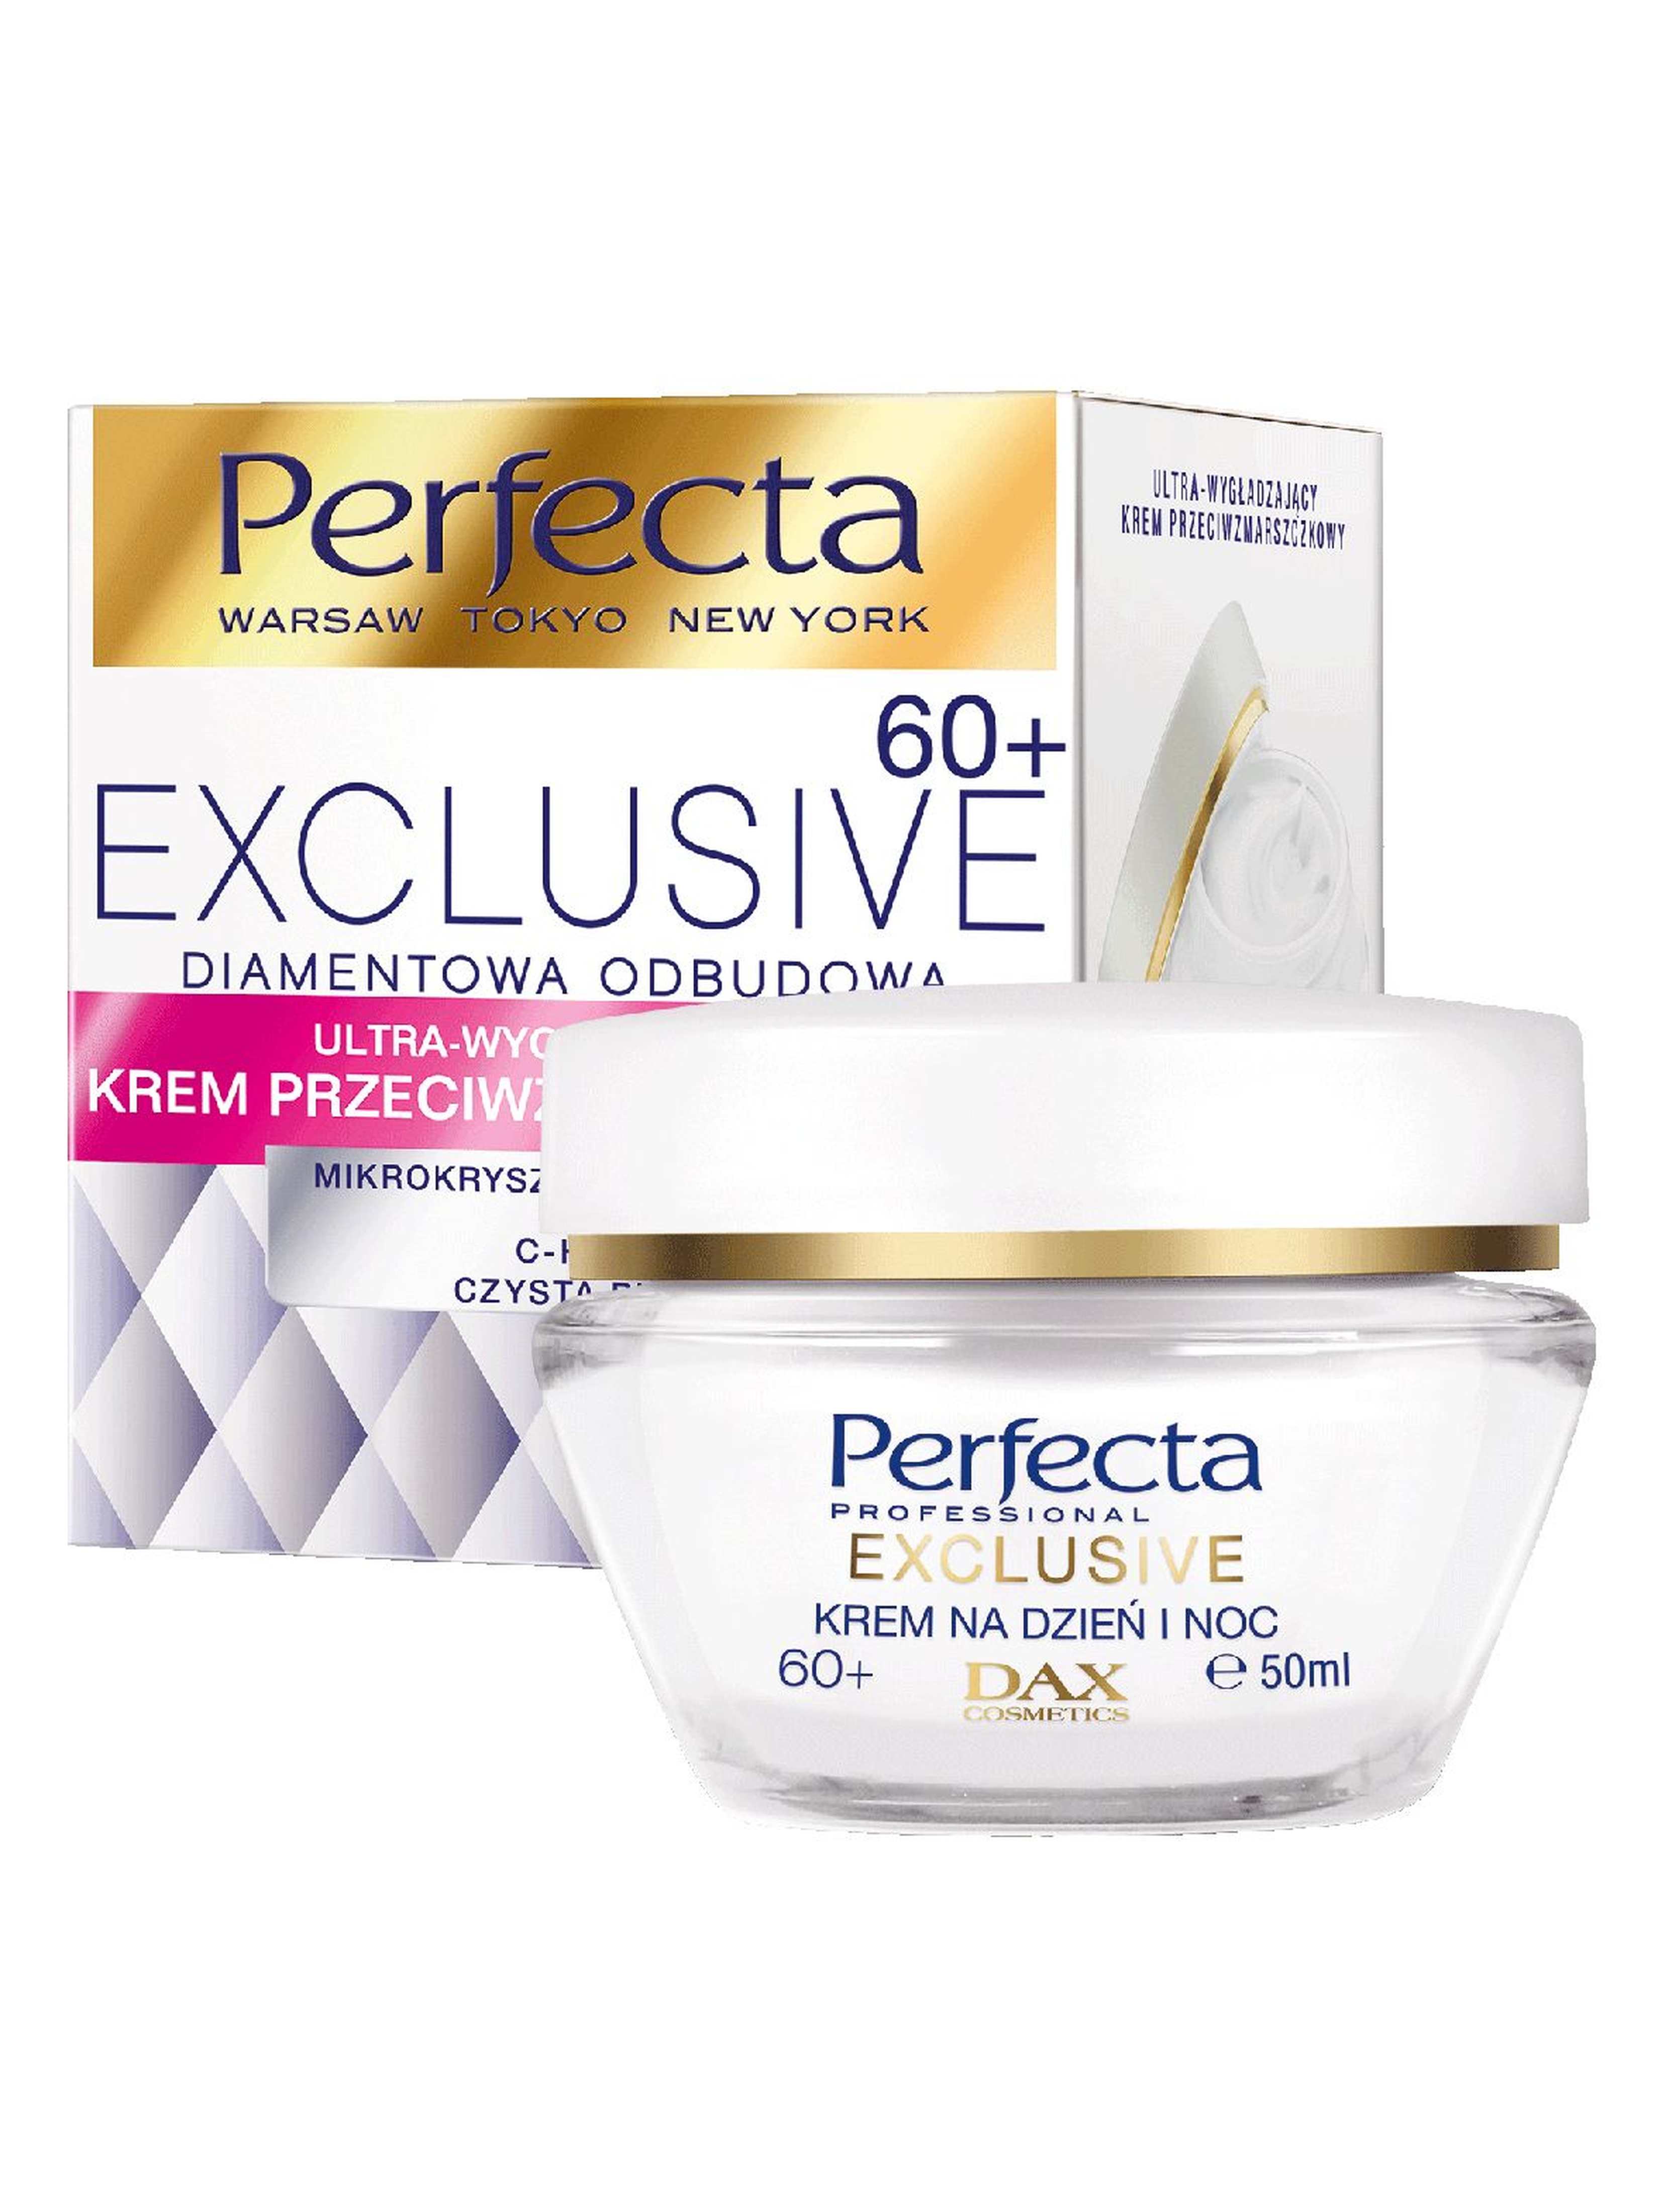 Perfecta Exclusive ultra wygładzajacy krem przeciwzmarszczkowy do twarzy - 60+, 50 ml